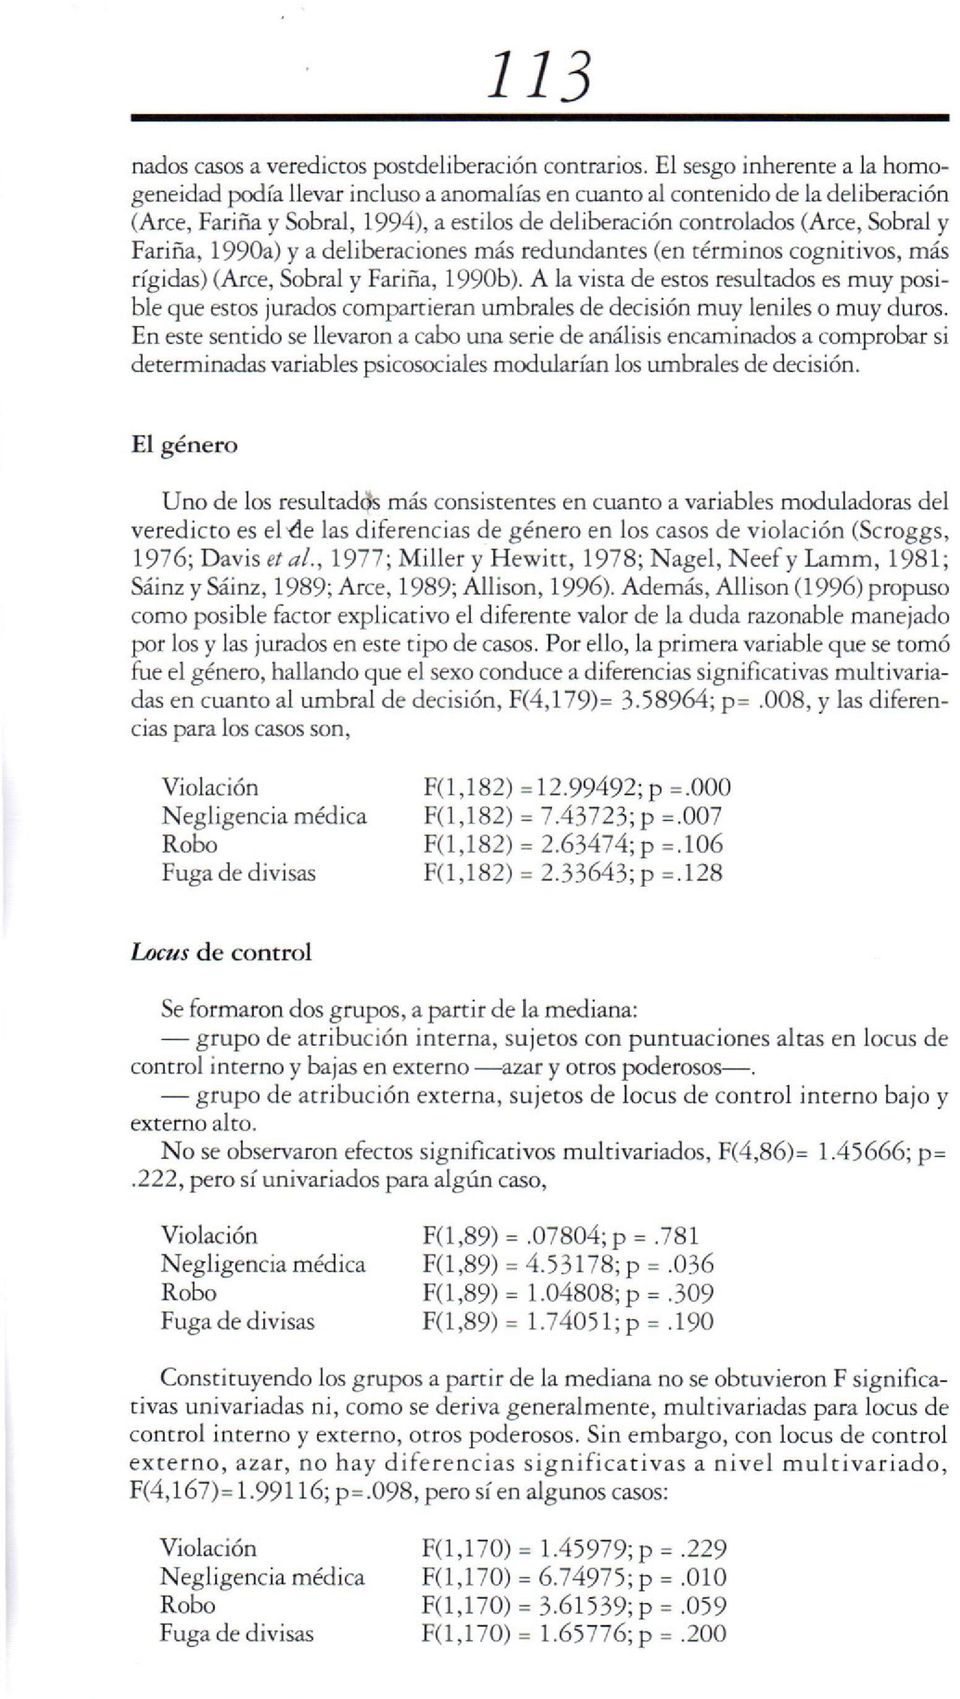 Fariña, 1990a) y a deliberaciones más redundanres (en términos cognitivos, más rígidas) (Arce, Sobral y Fariña, 1990b).